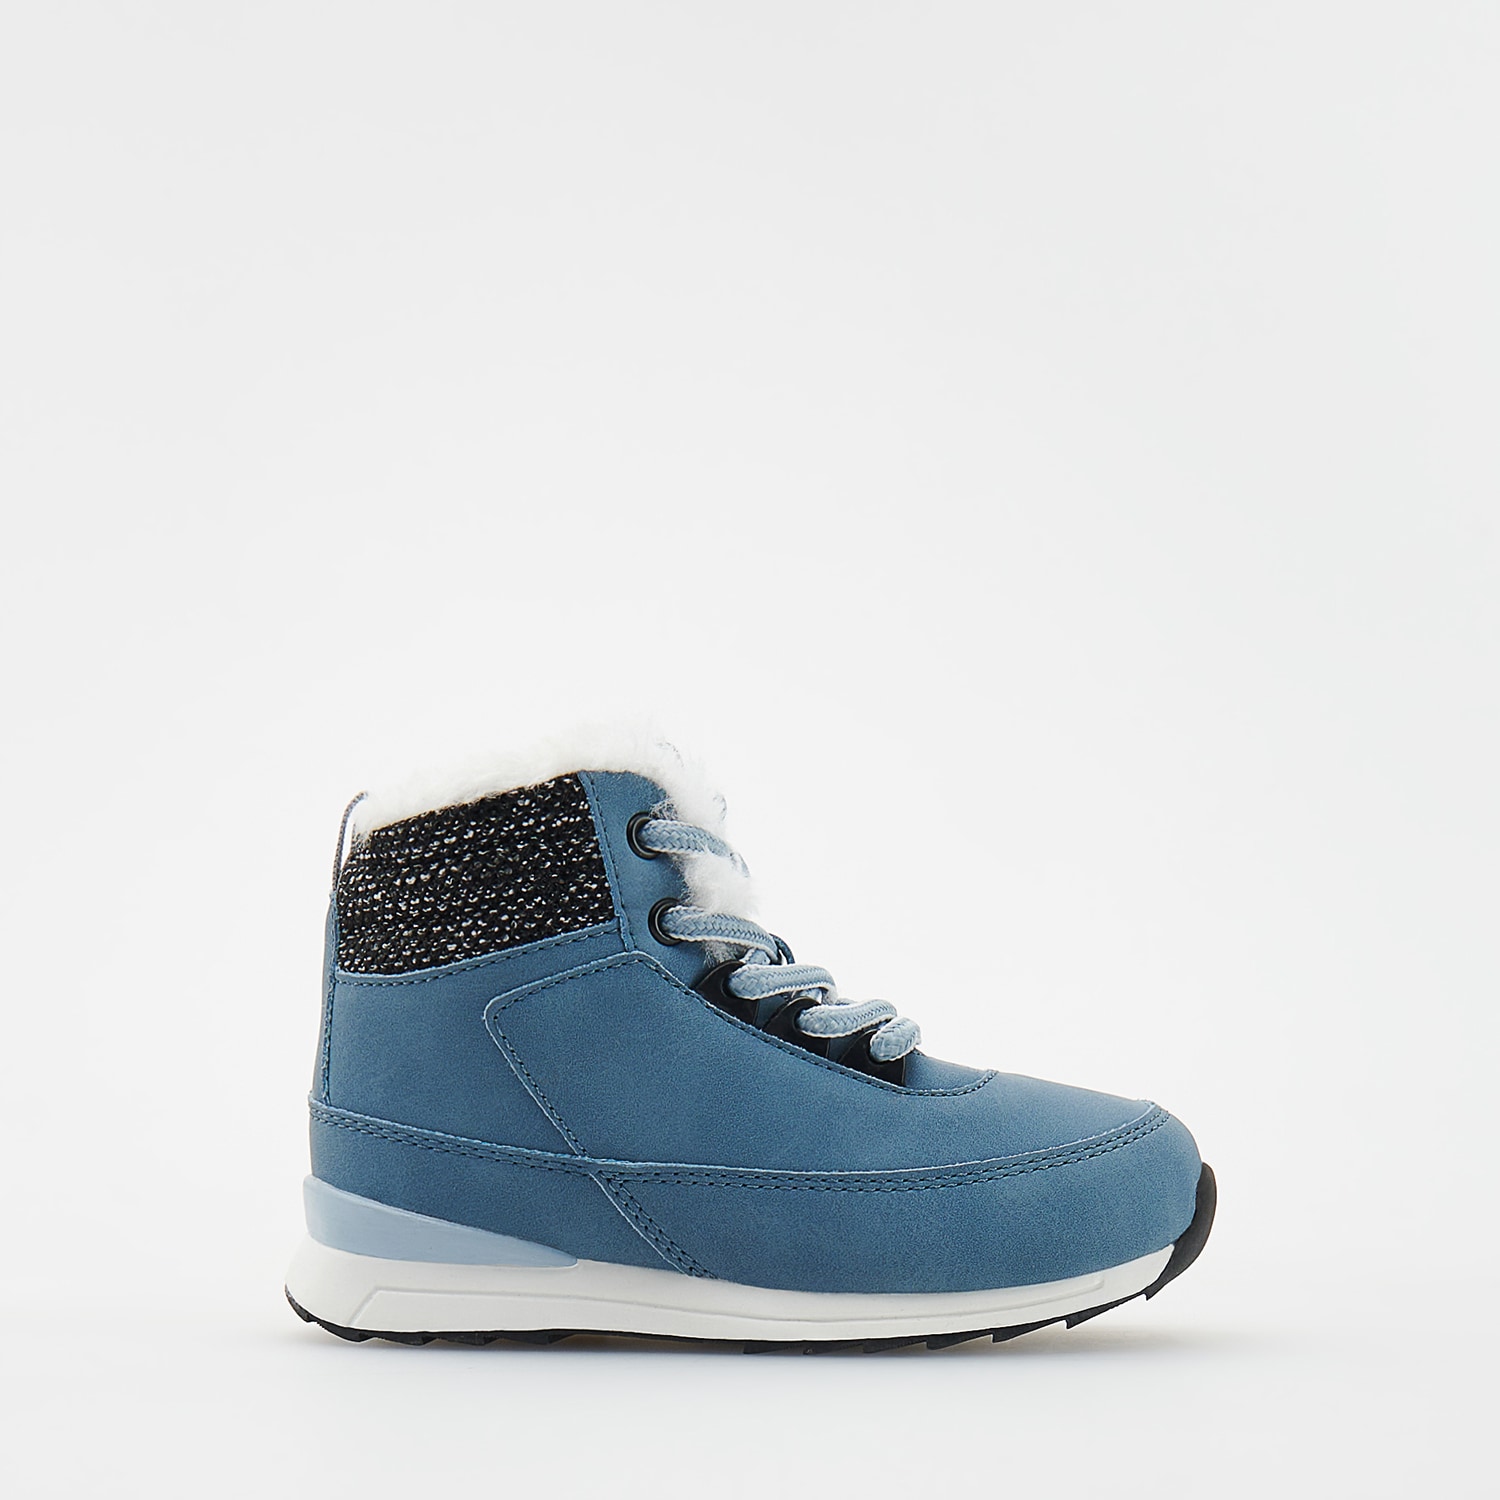 E-shop Reserved - Členkové topánky s detailom z umelej kožušiny - Tyrkysová